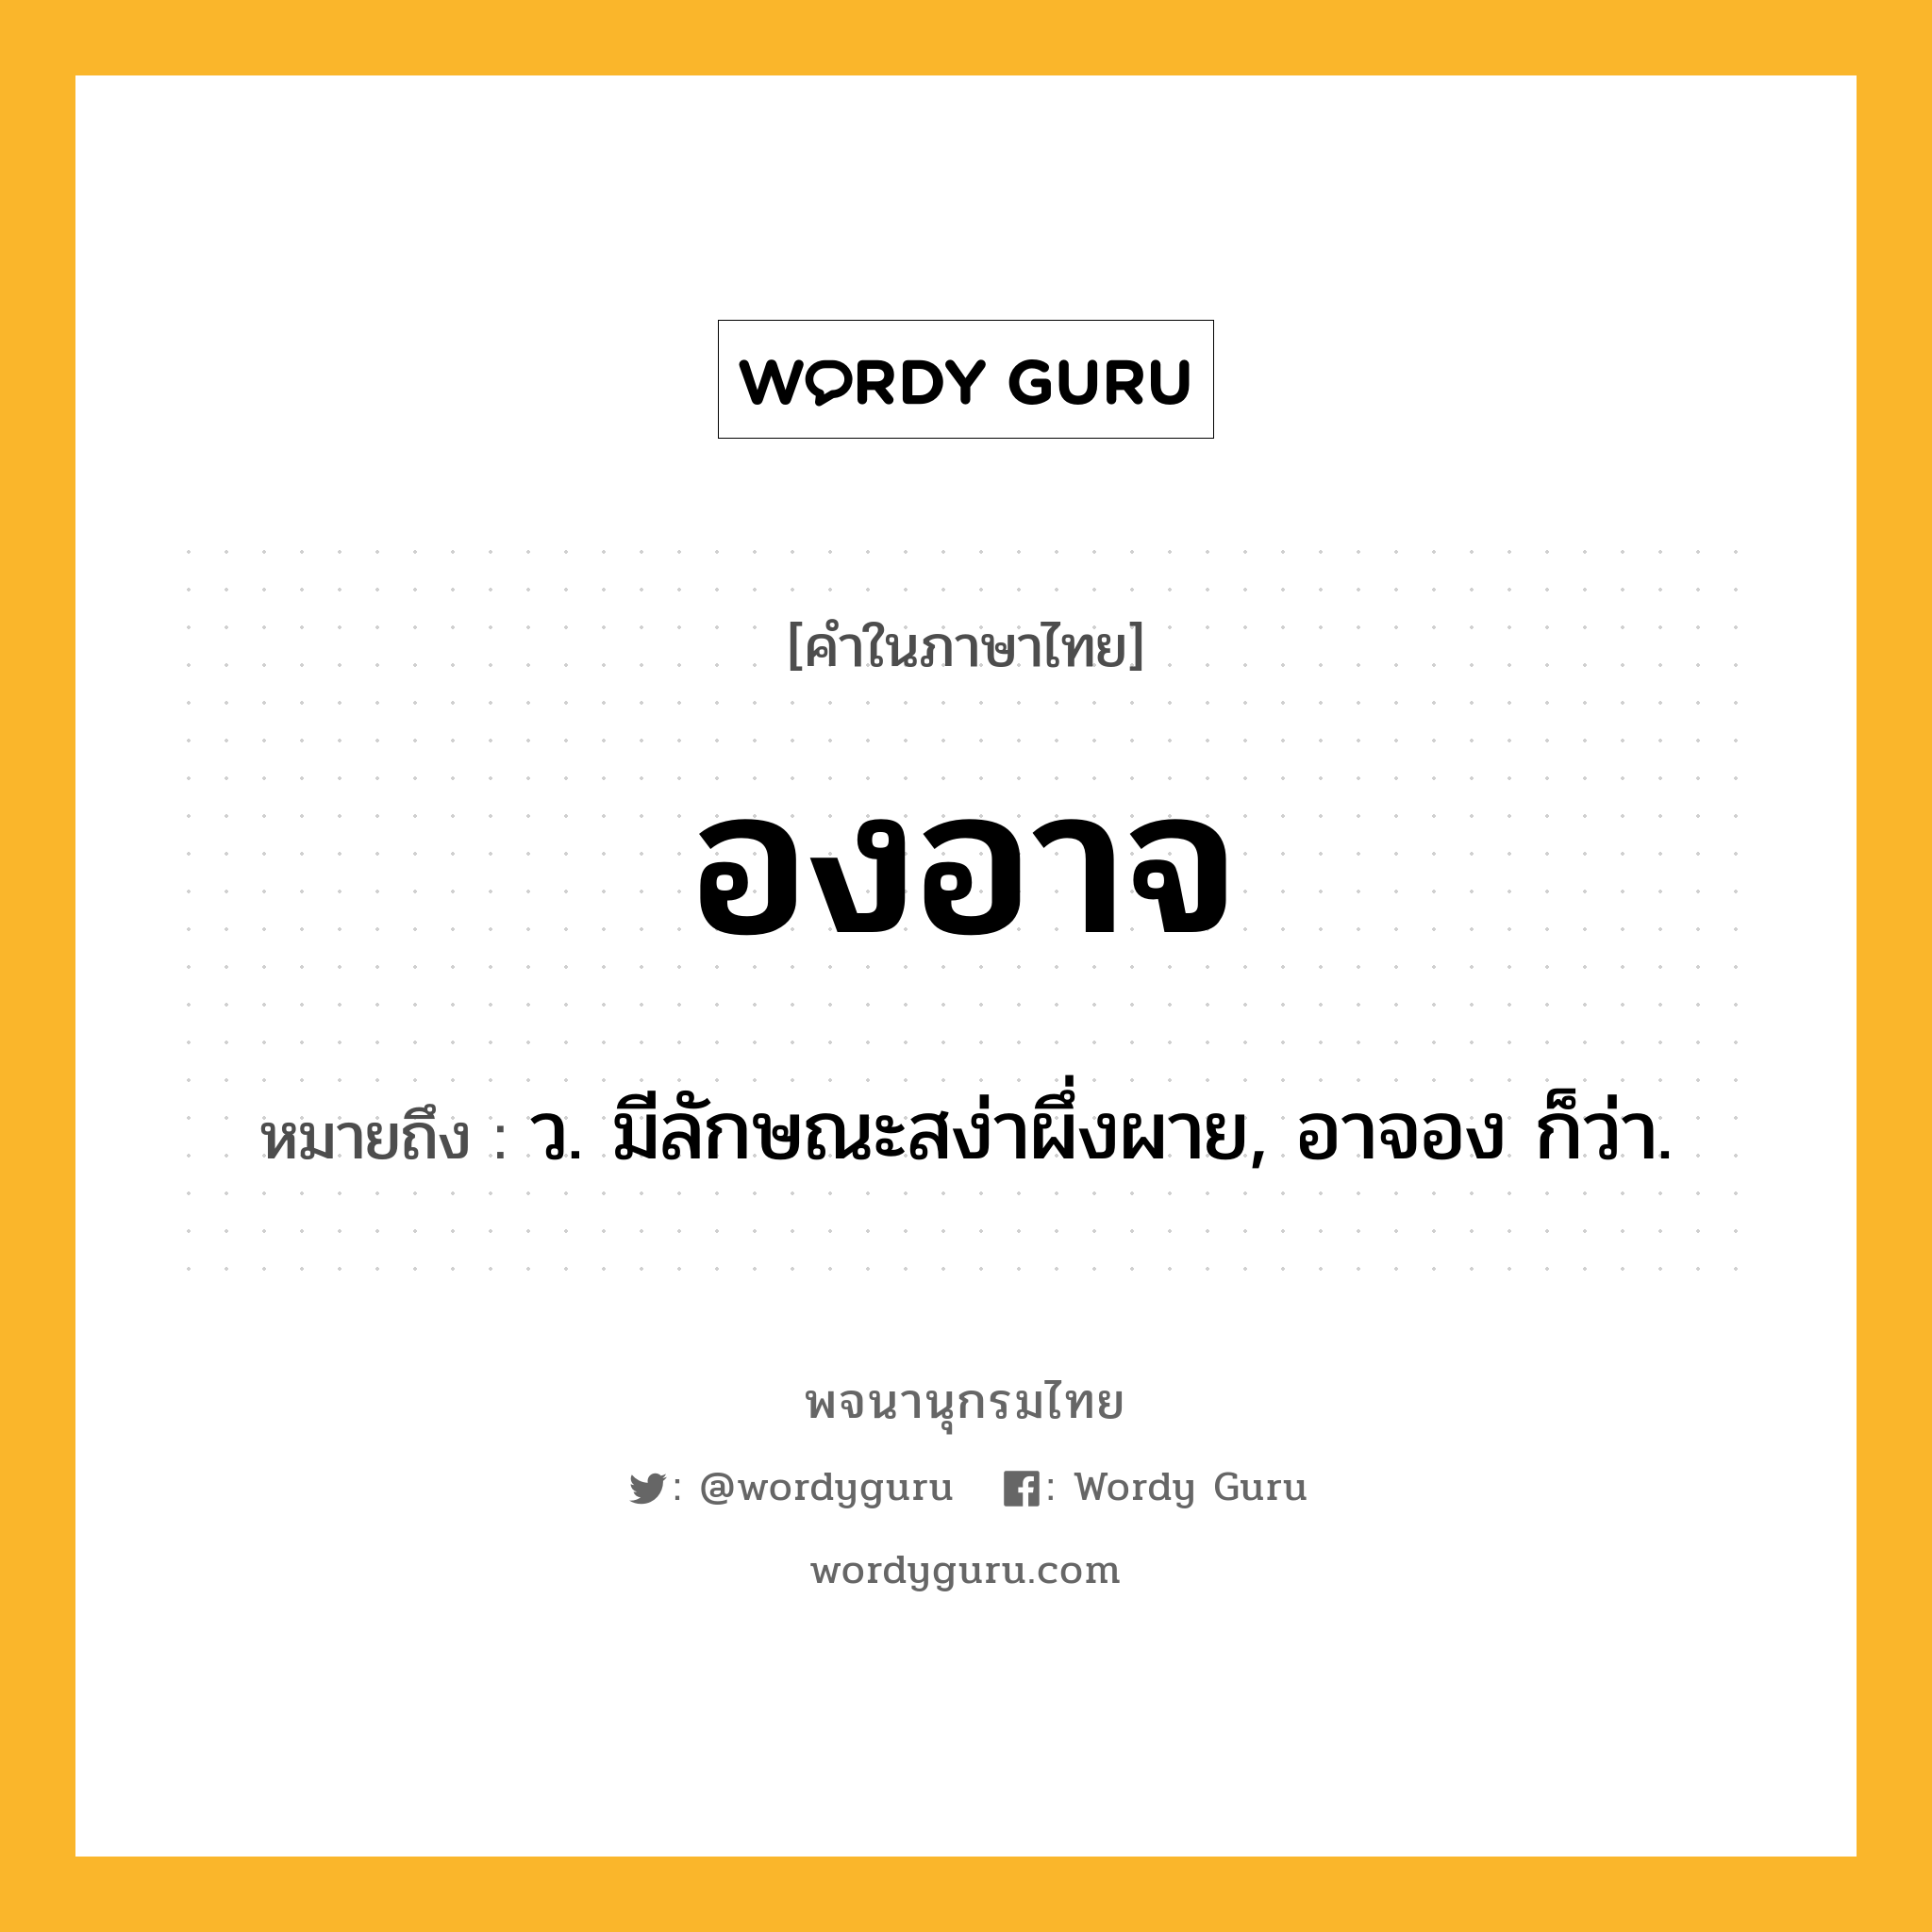 องอาจ ความหมาย หมายถึงอะไร?, คำในภาษาไทย องอาจ หมายถึง ว. มีลักษณะสง่าผึ่งผาย, อาจอง ก็ว่า.